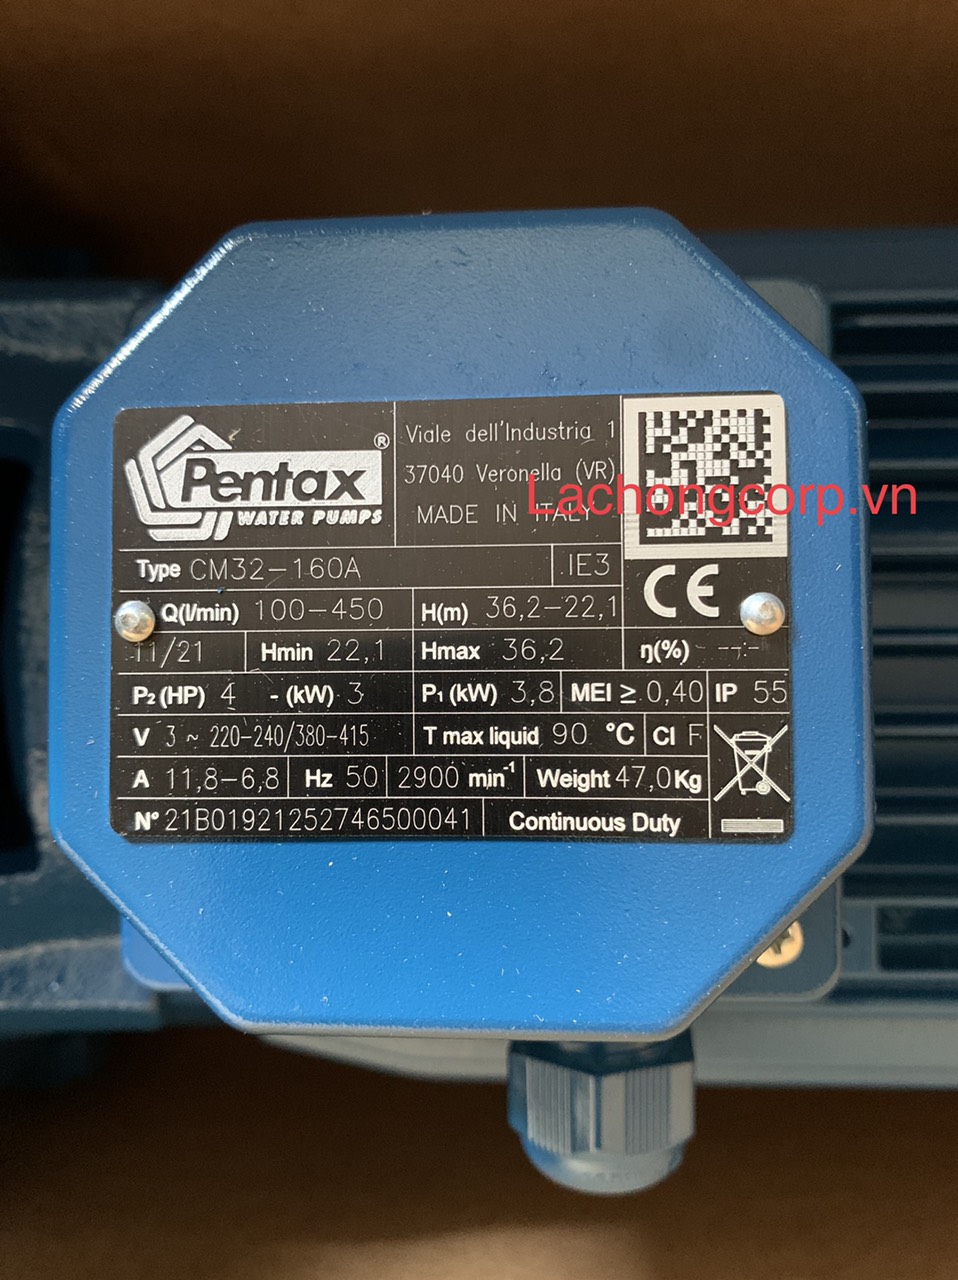 Máy bơm trục ngang công nghiệp Pentax là gì